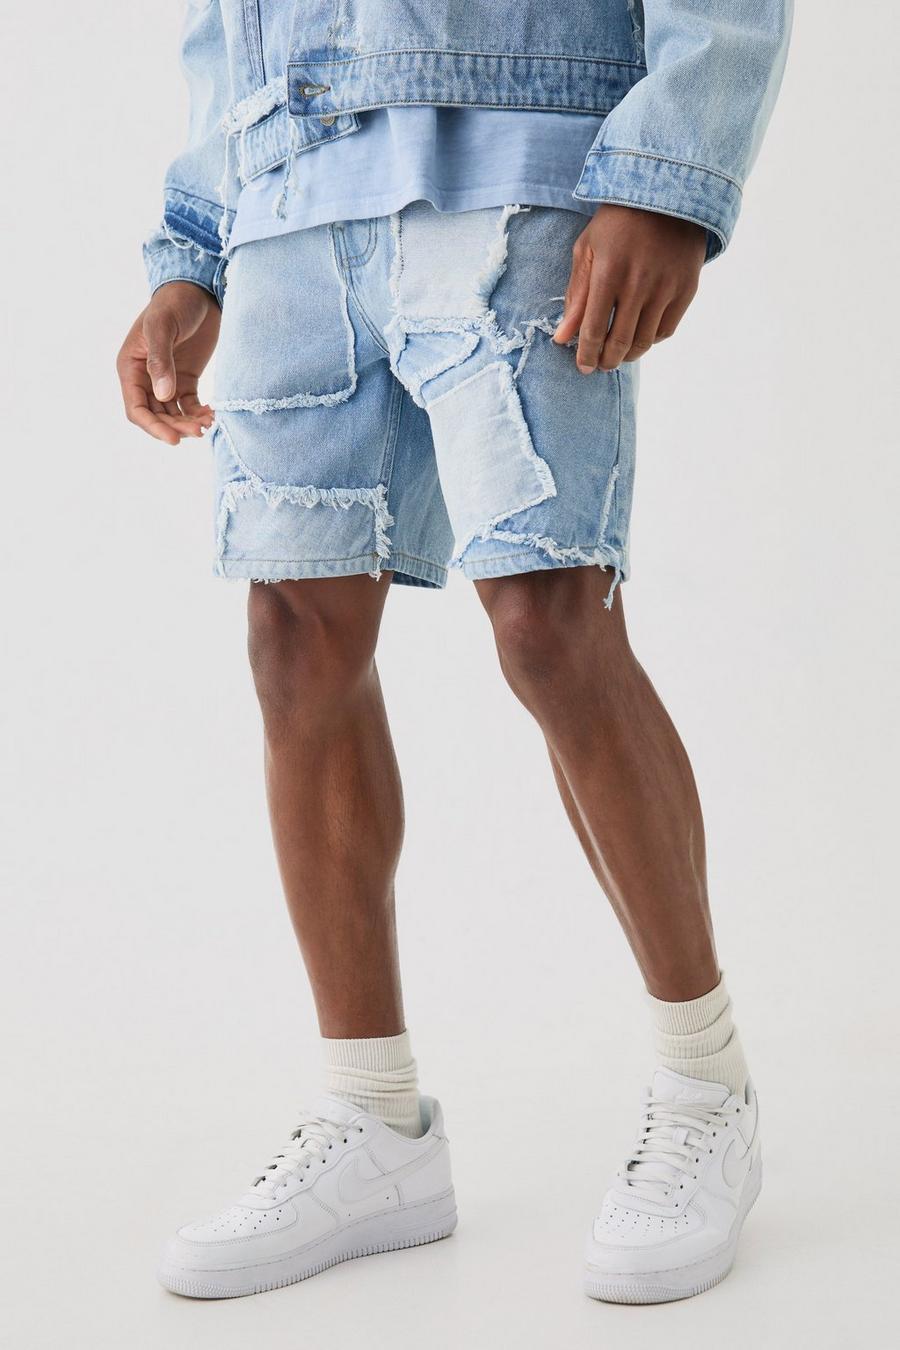 Pantalones cortos vaqueros holgados con retazos desgastados en azul claro, Light blue